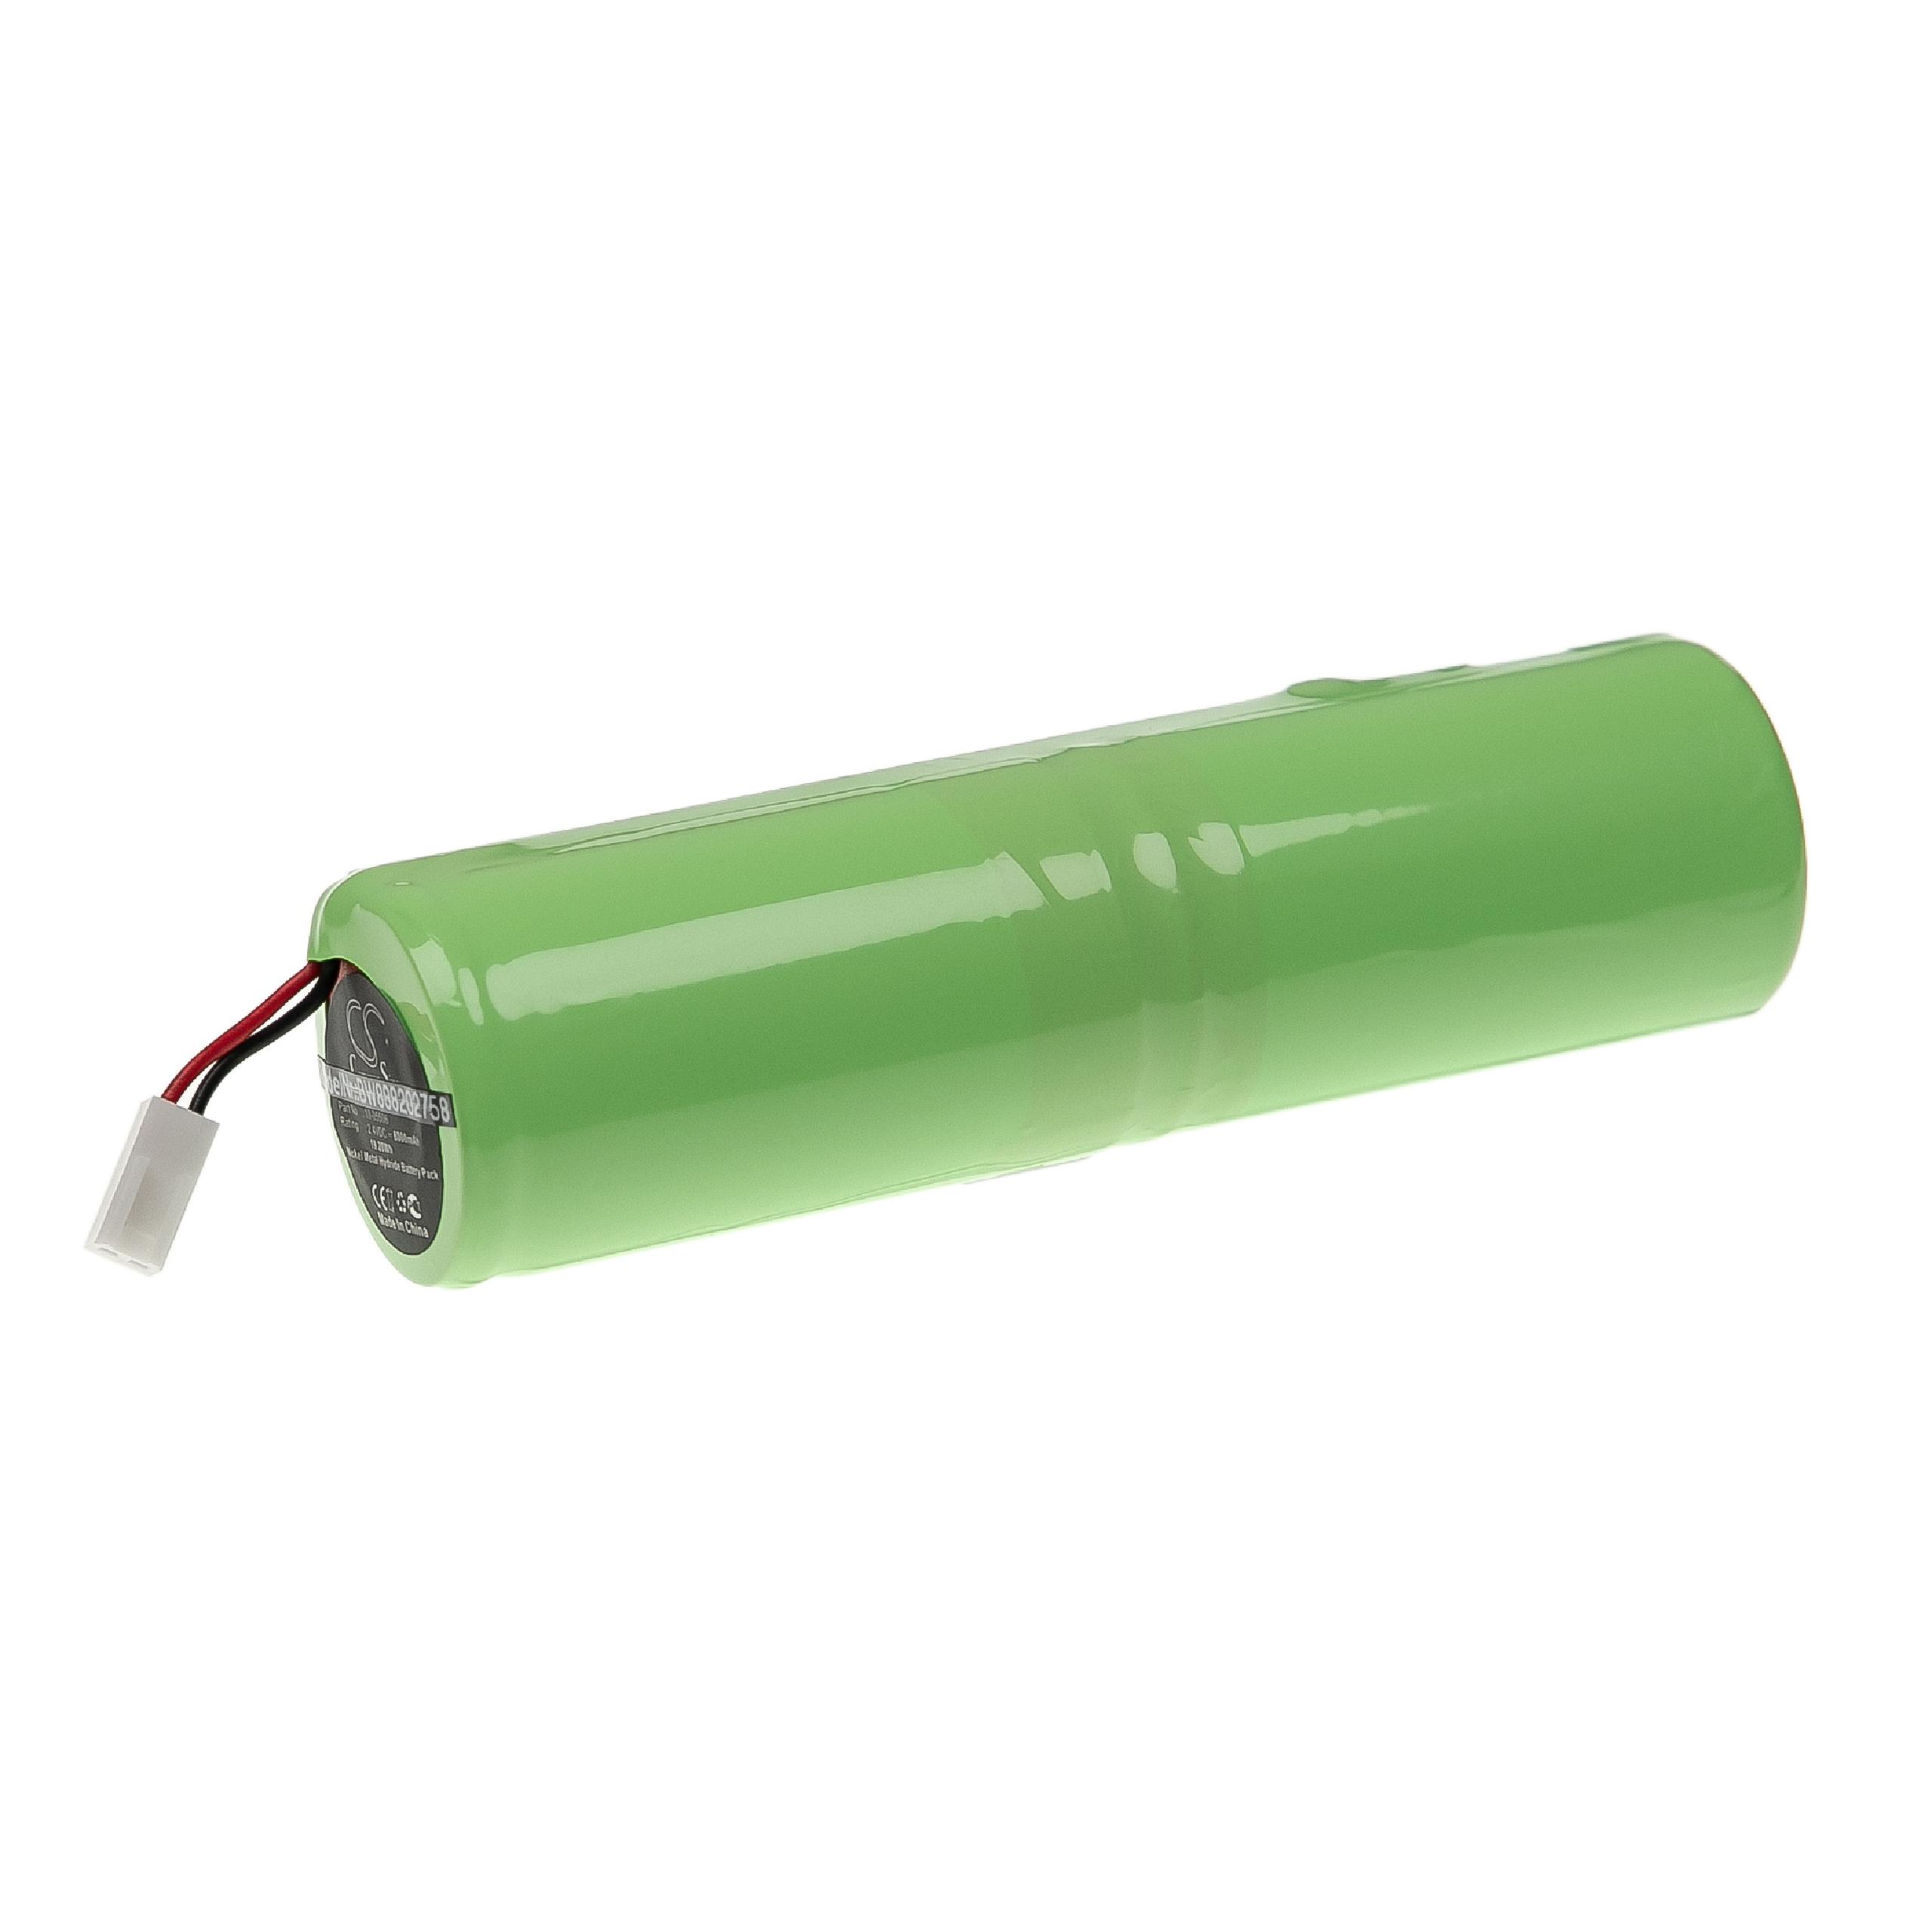 Batterie remplace Geo-Fennel 10-05506, GF-243000-18 pour outil de mesure - 8000mAh 2,4V NiMH